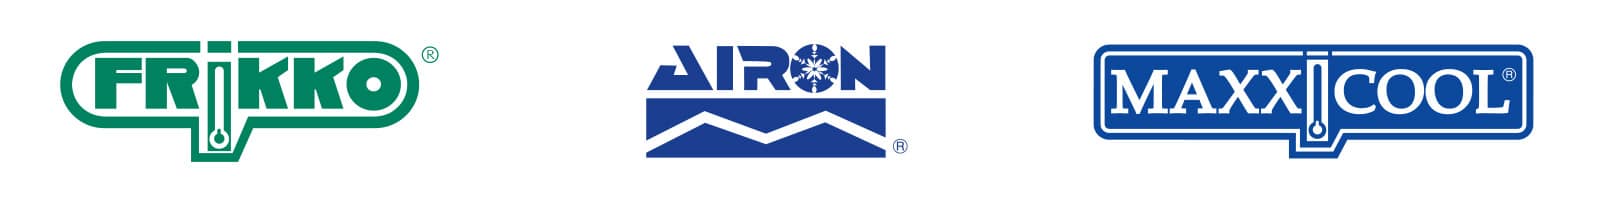 logotipos de Frikko Airon y Maxxicool